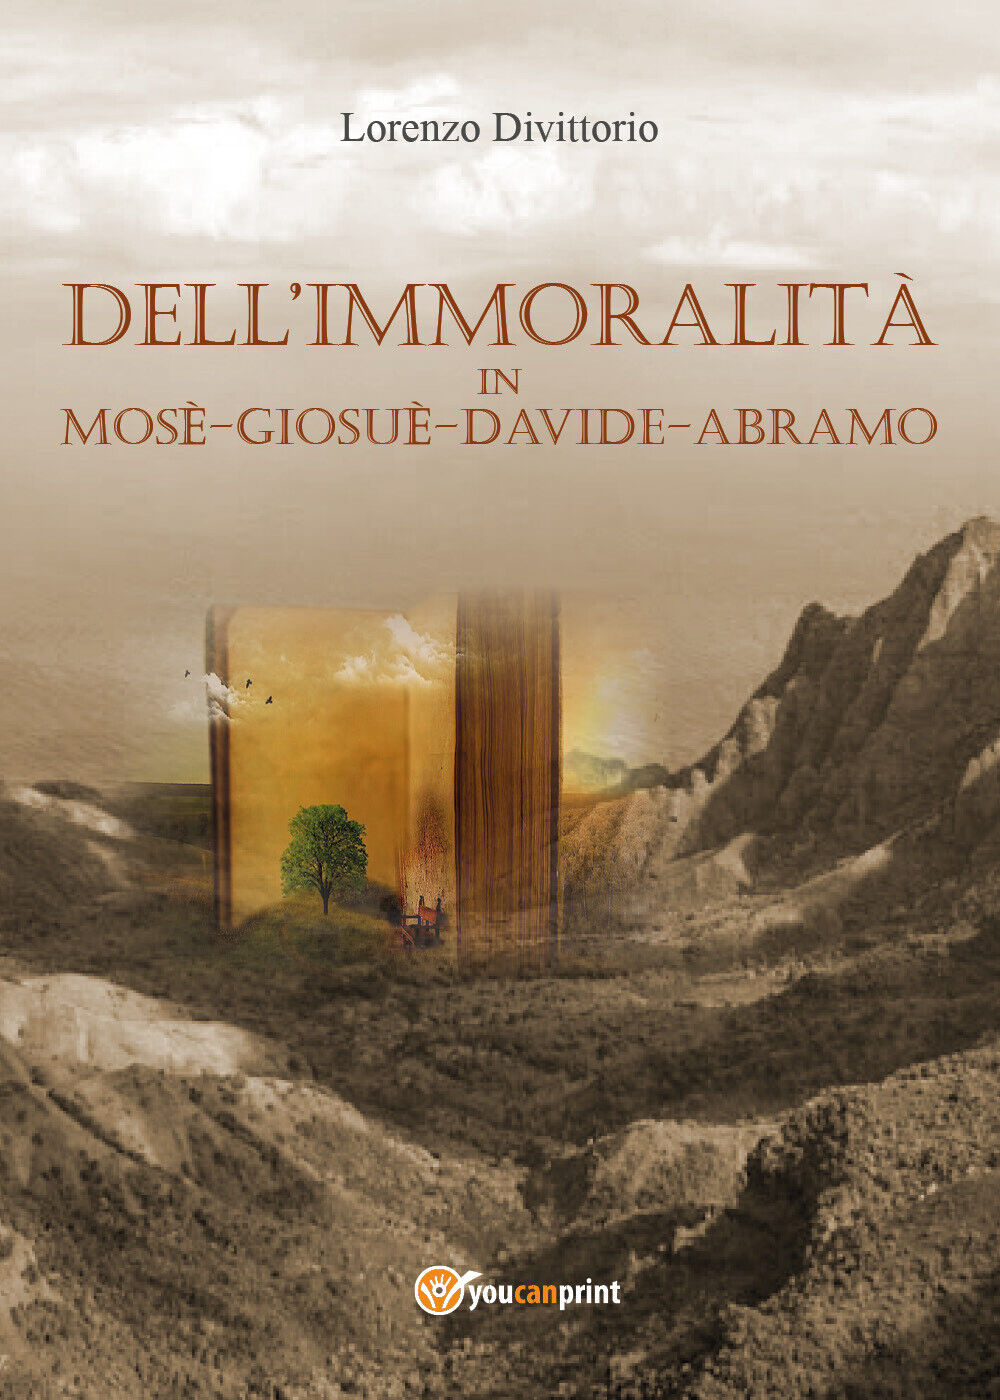 DelL'immoralit? in Mos?, Giosu?, Davide, Abramo  di Lorenzo Divittorio,  2017